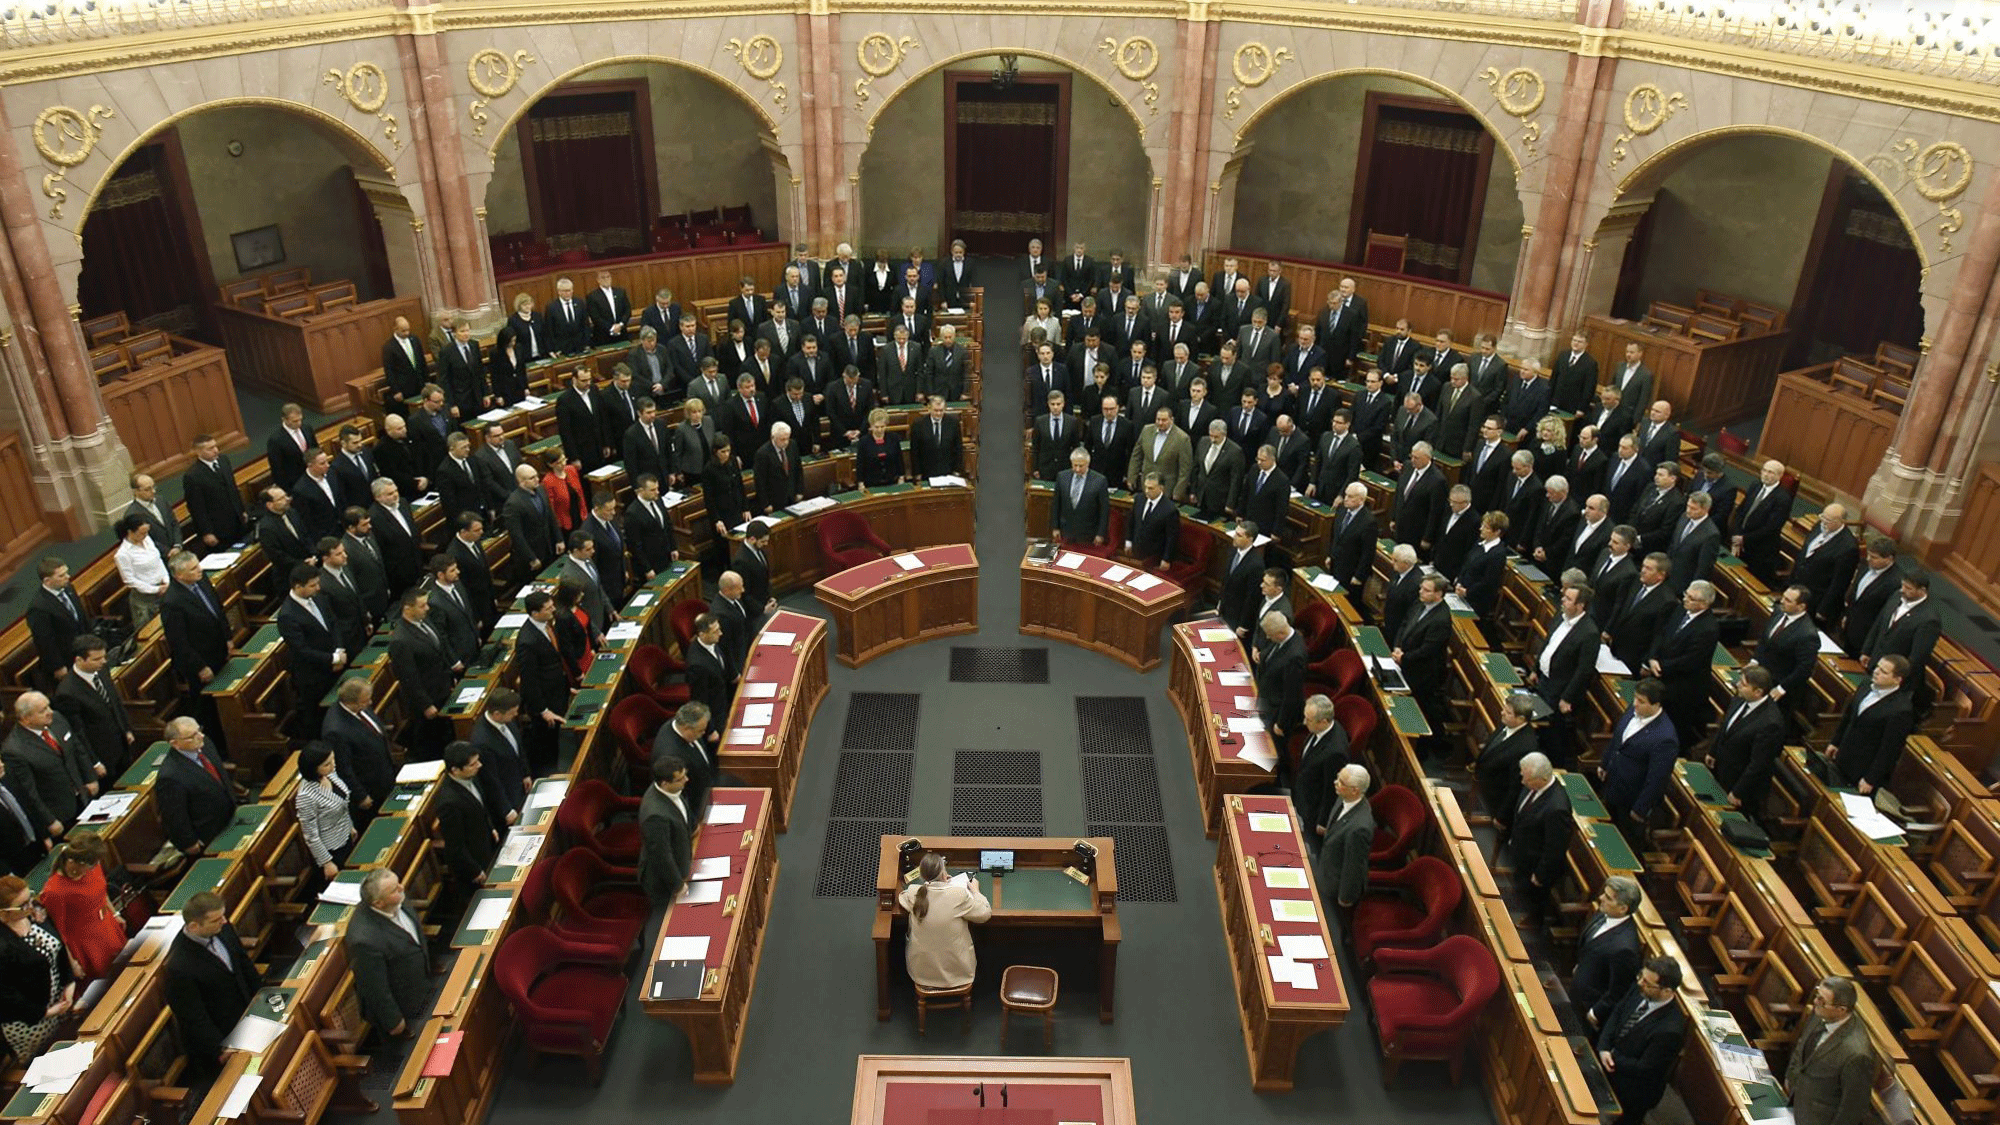 Fél óra alatt véget is ért a parlament rendkívüli ülése, egyetlen fideszes sem vett részt rajta